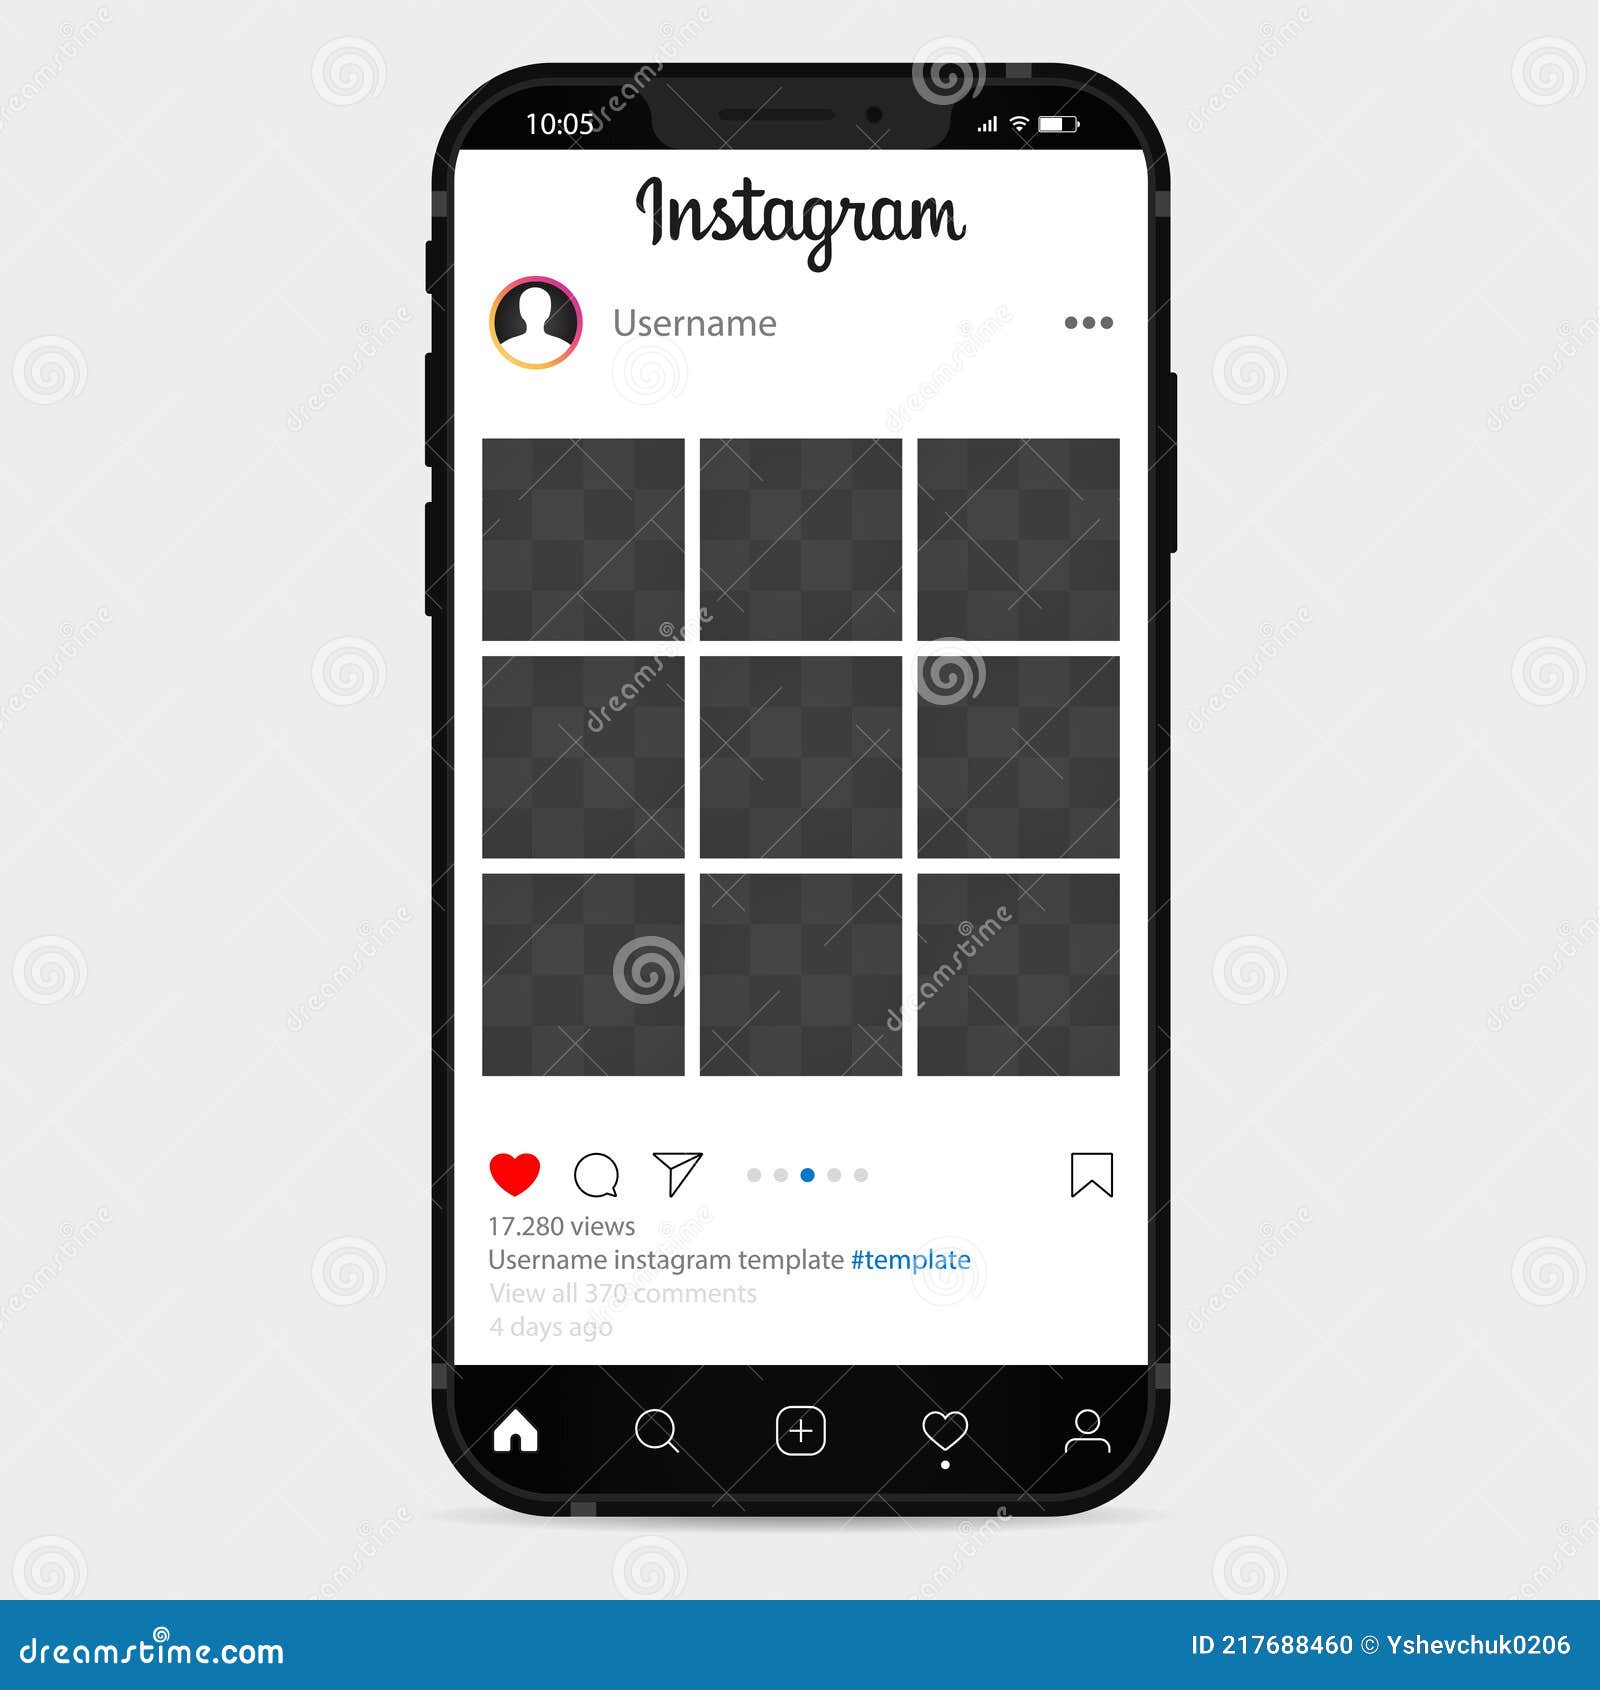 Instagram mockup:
Bạn đang tìm kiếm một mẫu Instagram để giúp quảng bá một sản phẩm hoặc thương hiệu của mình? Với ảnh này, bạn sẽ tìm thấy rất nhiều mẫu Instagram đẹp mắt và chuyên nghiệp.